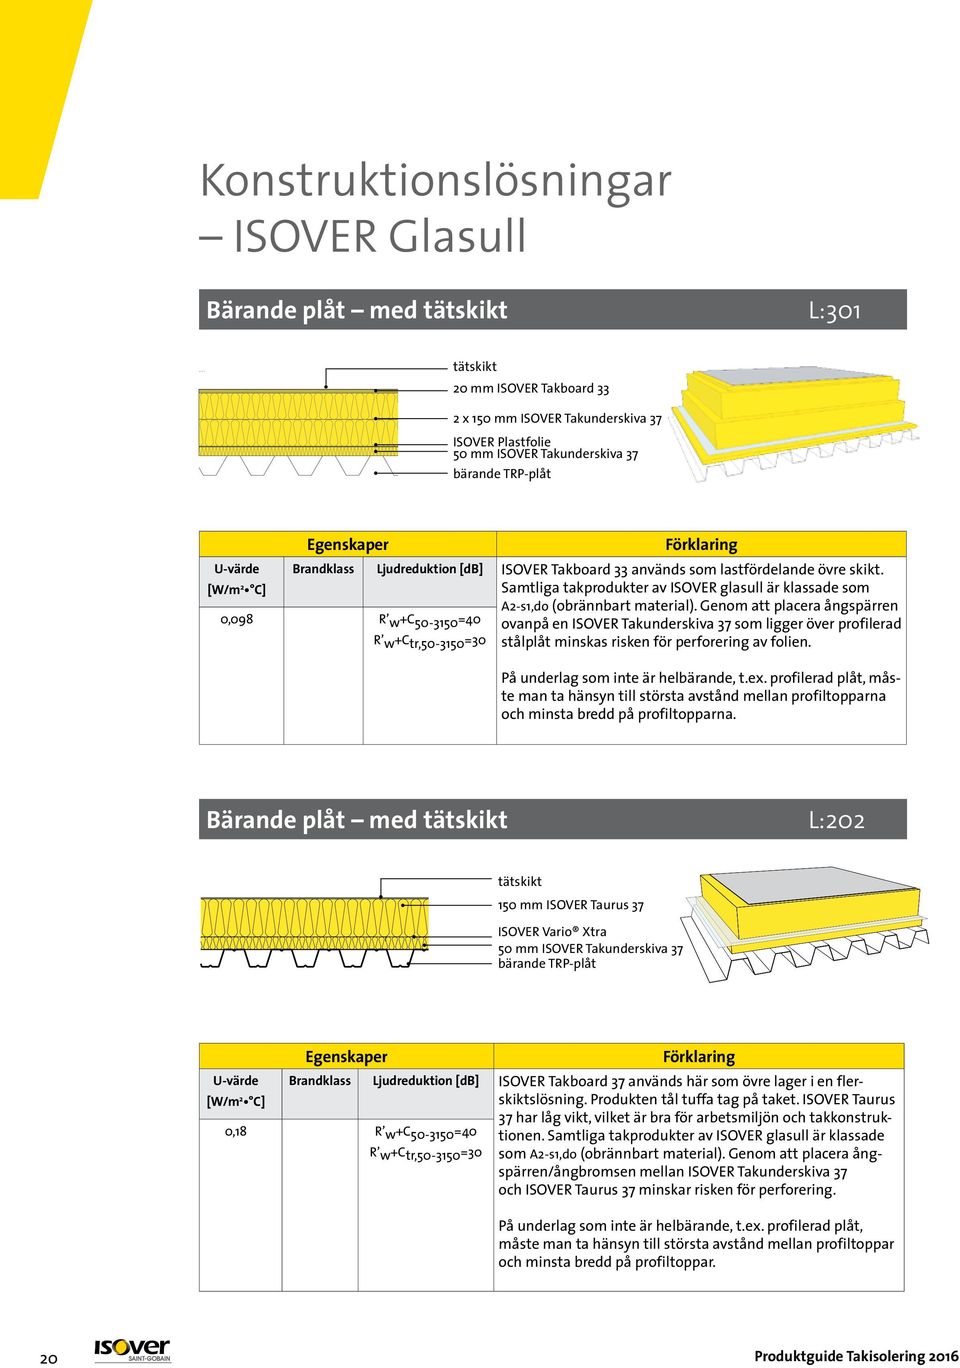 Samtliga takprodukter av ISOVER glasull är klassade som A2-s1,do (obrännbart material).